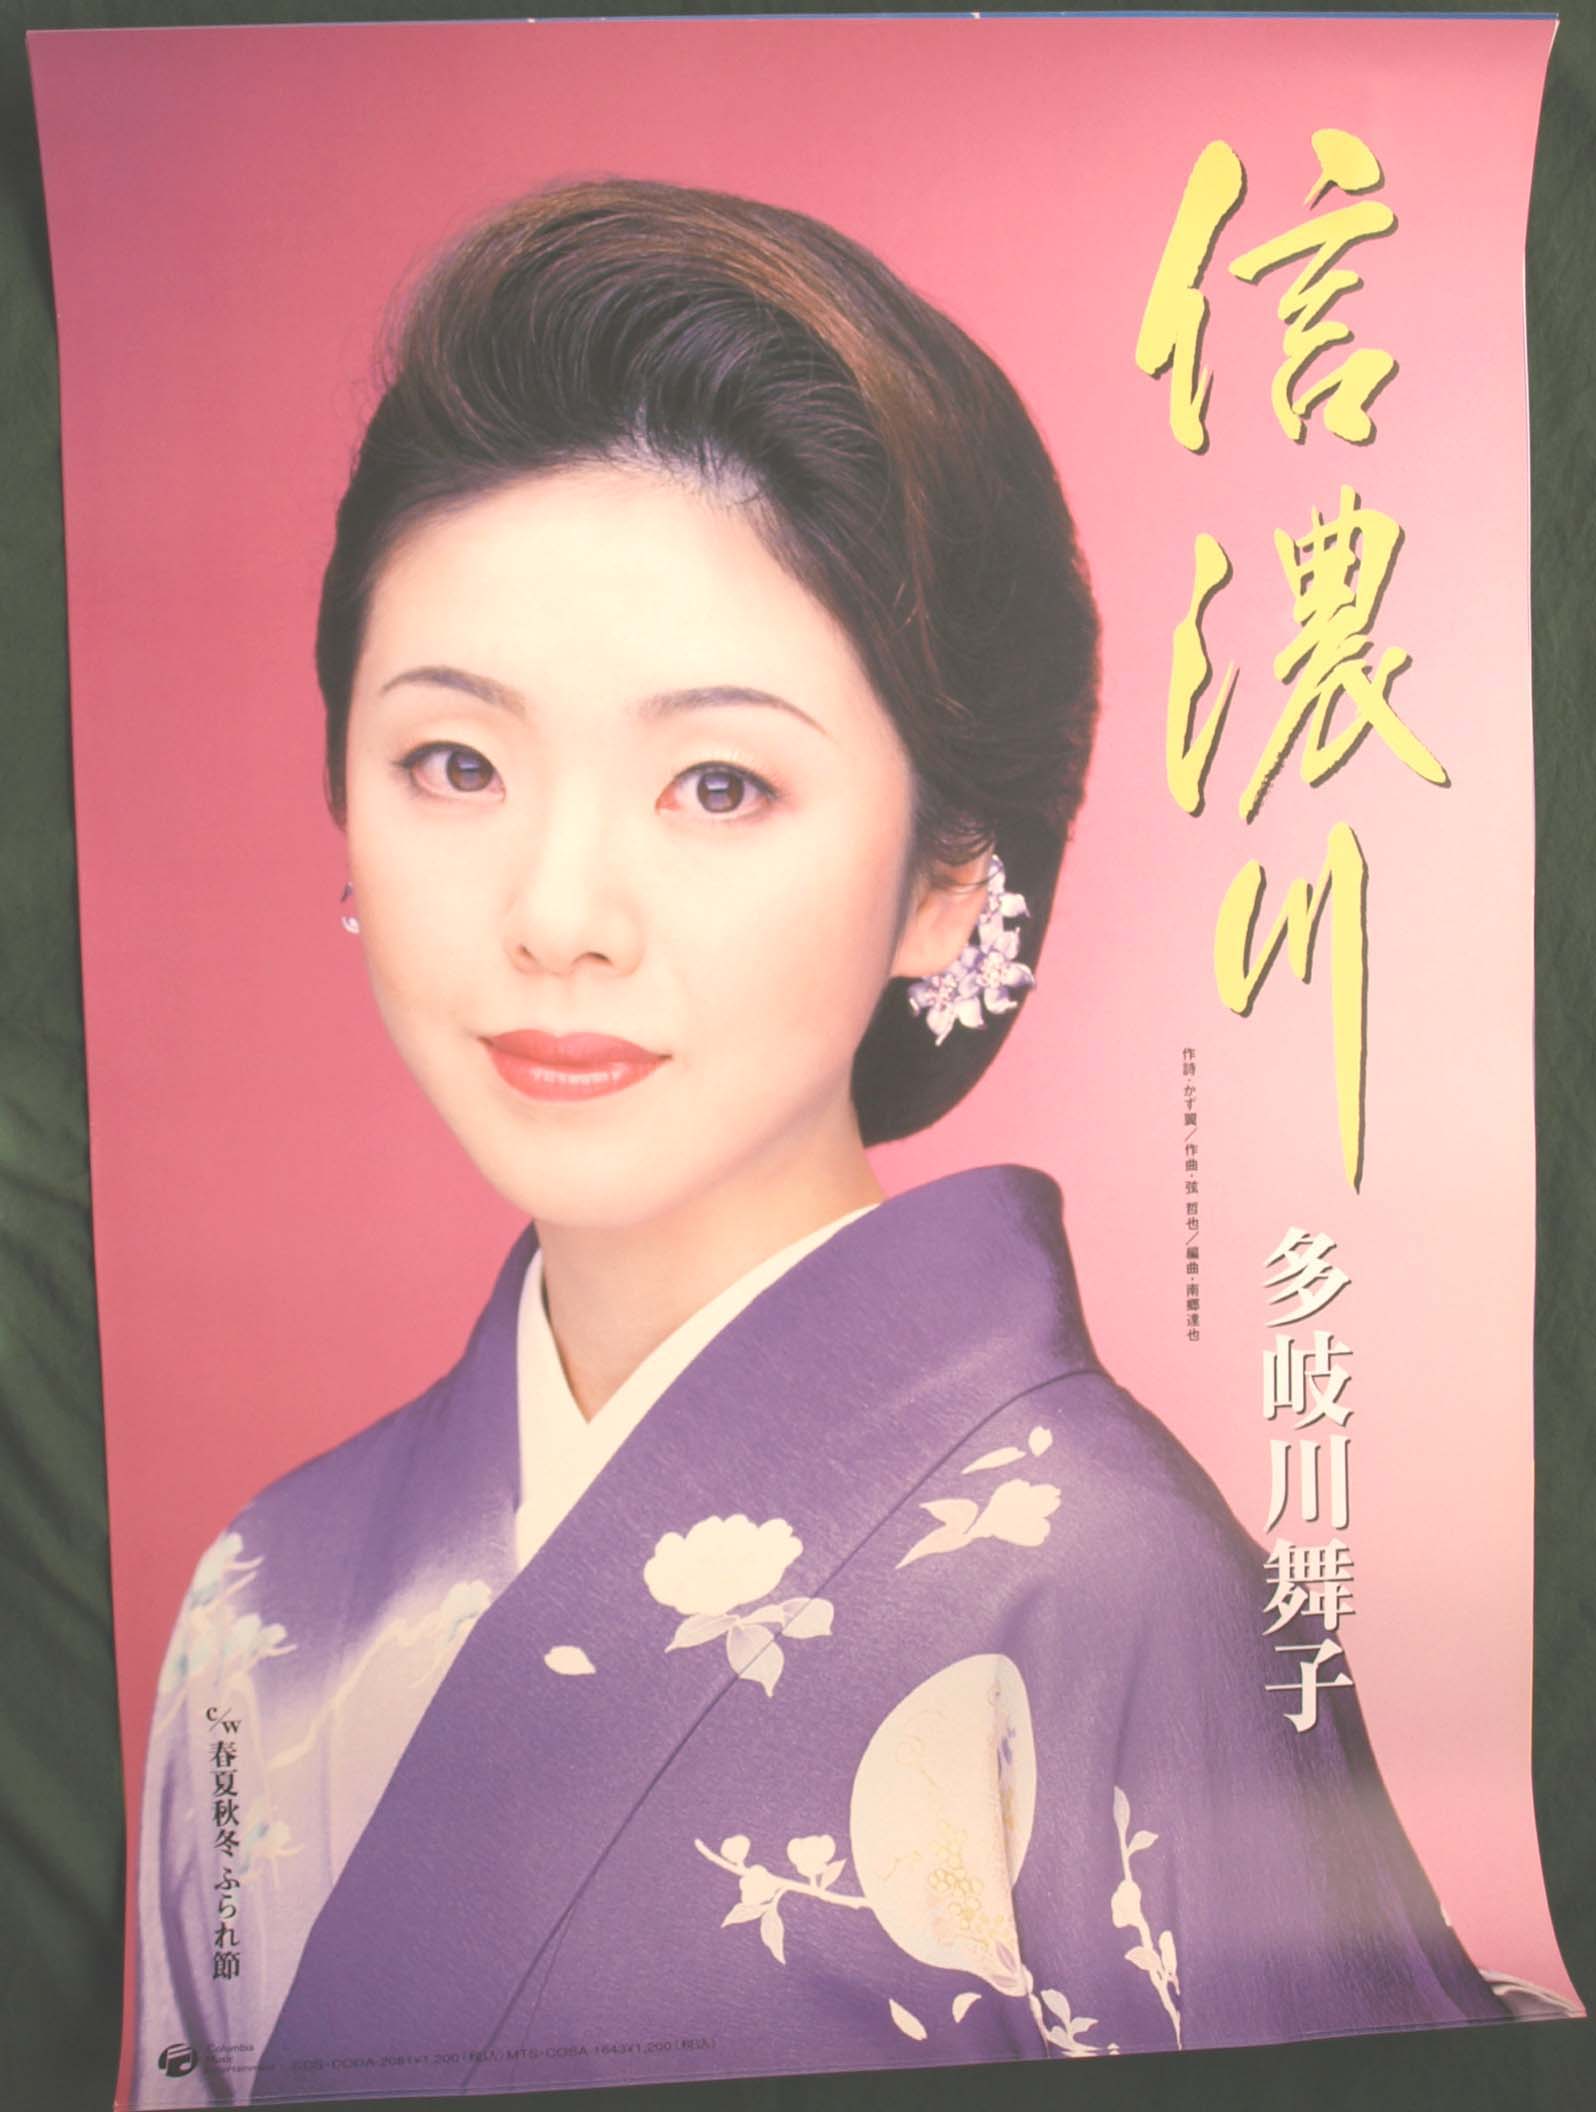 多岐川舞子 「信濃川」のポスター